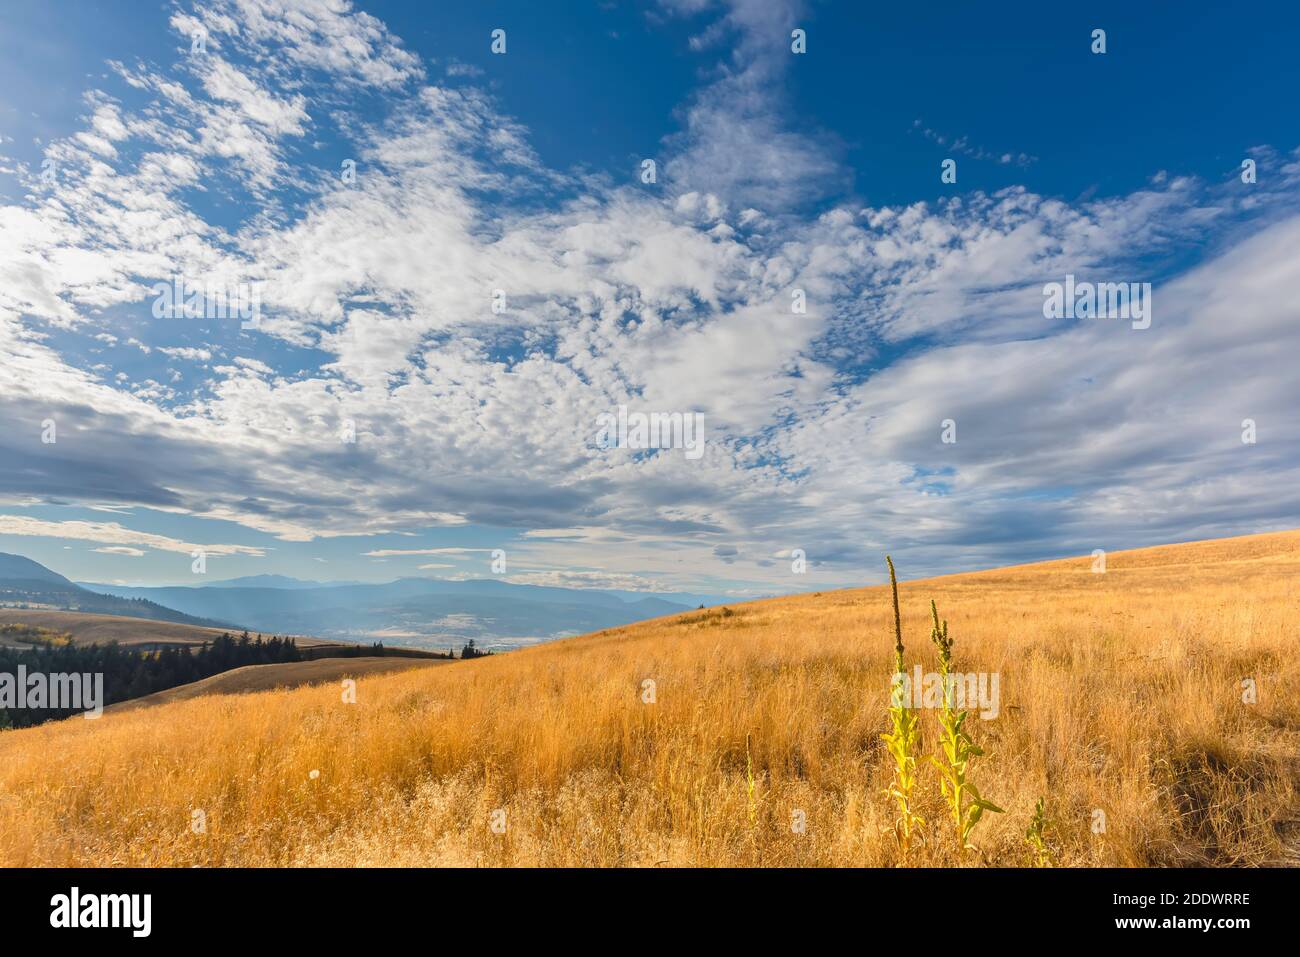 Erba gialla d'autunno nella steppa, sulle colline, silhouette di montagne e una foresta verde in lontananza, cielo blu con nuvole bianche nel backgr Foto Stock